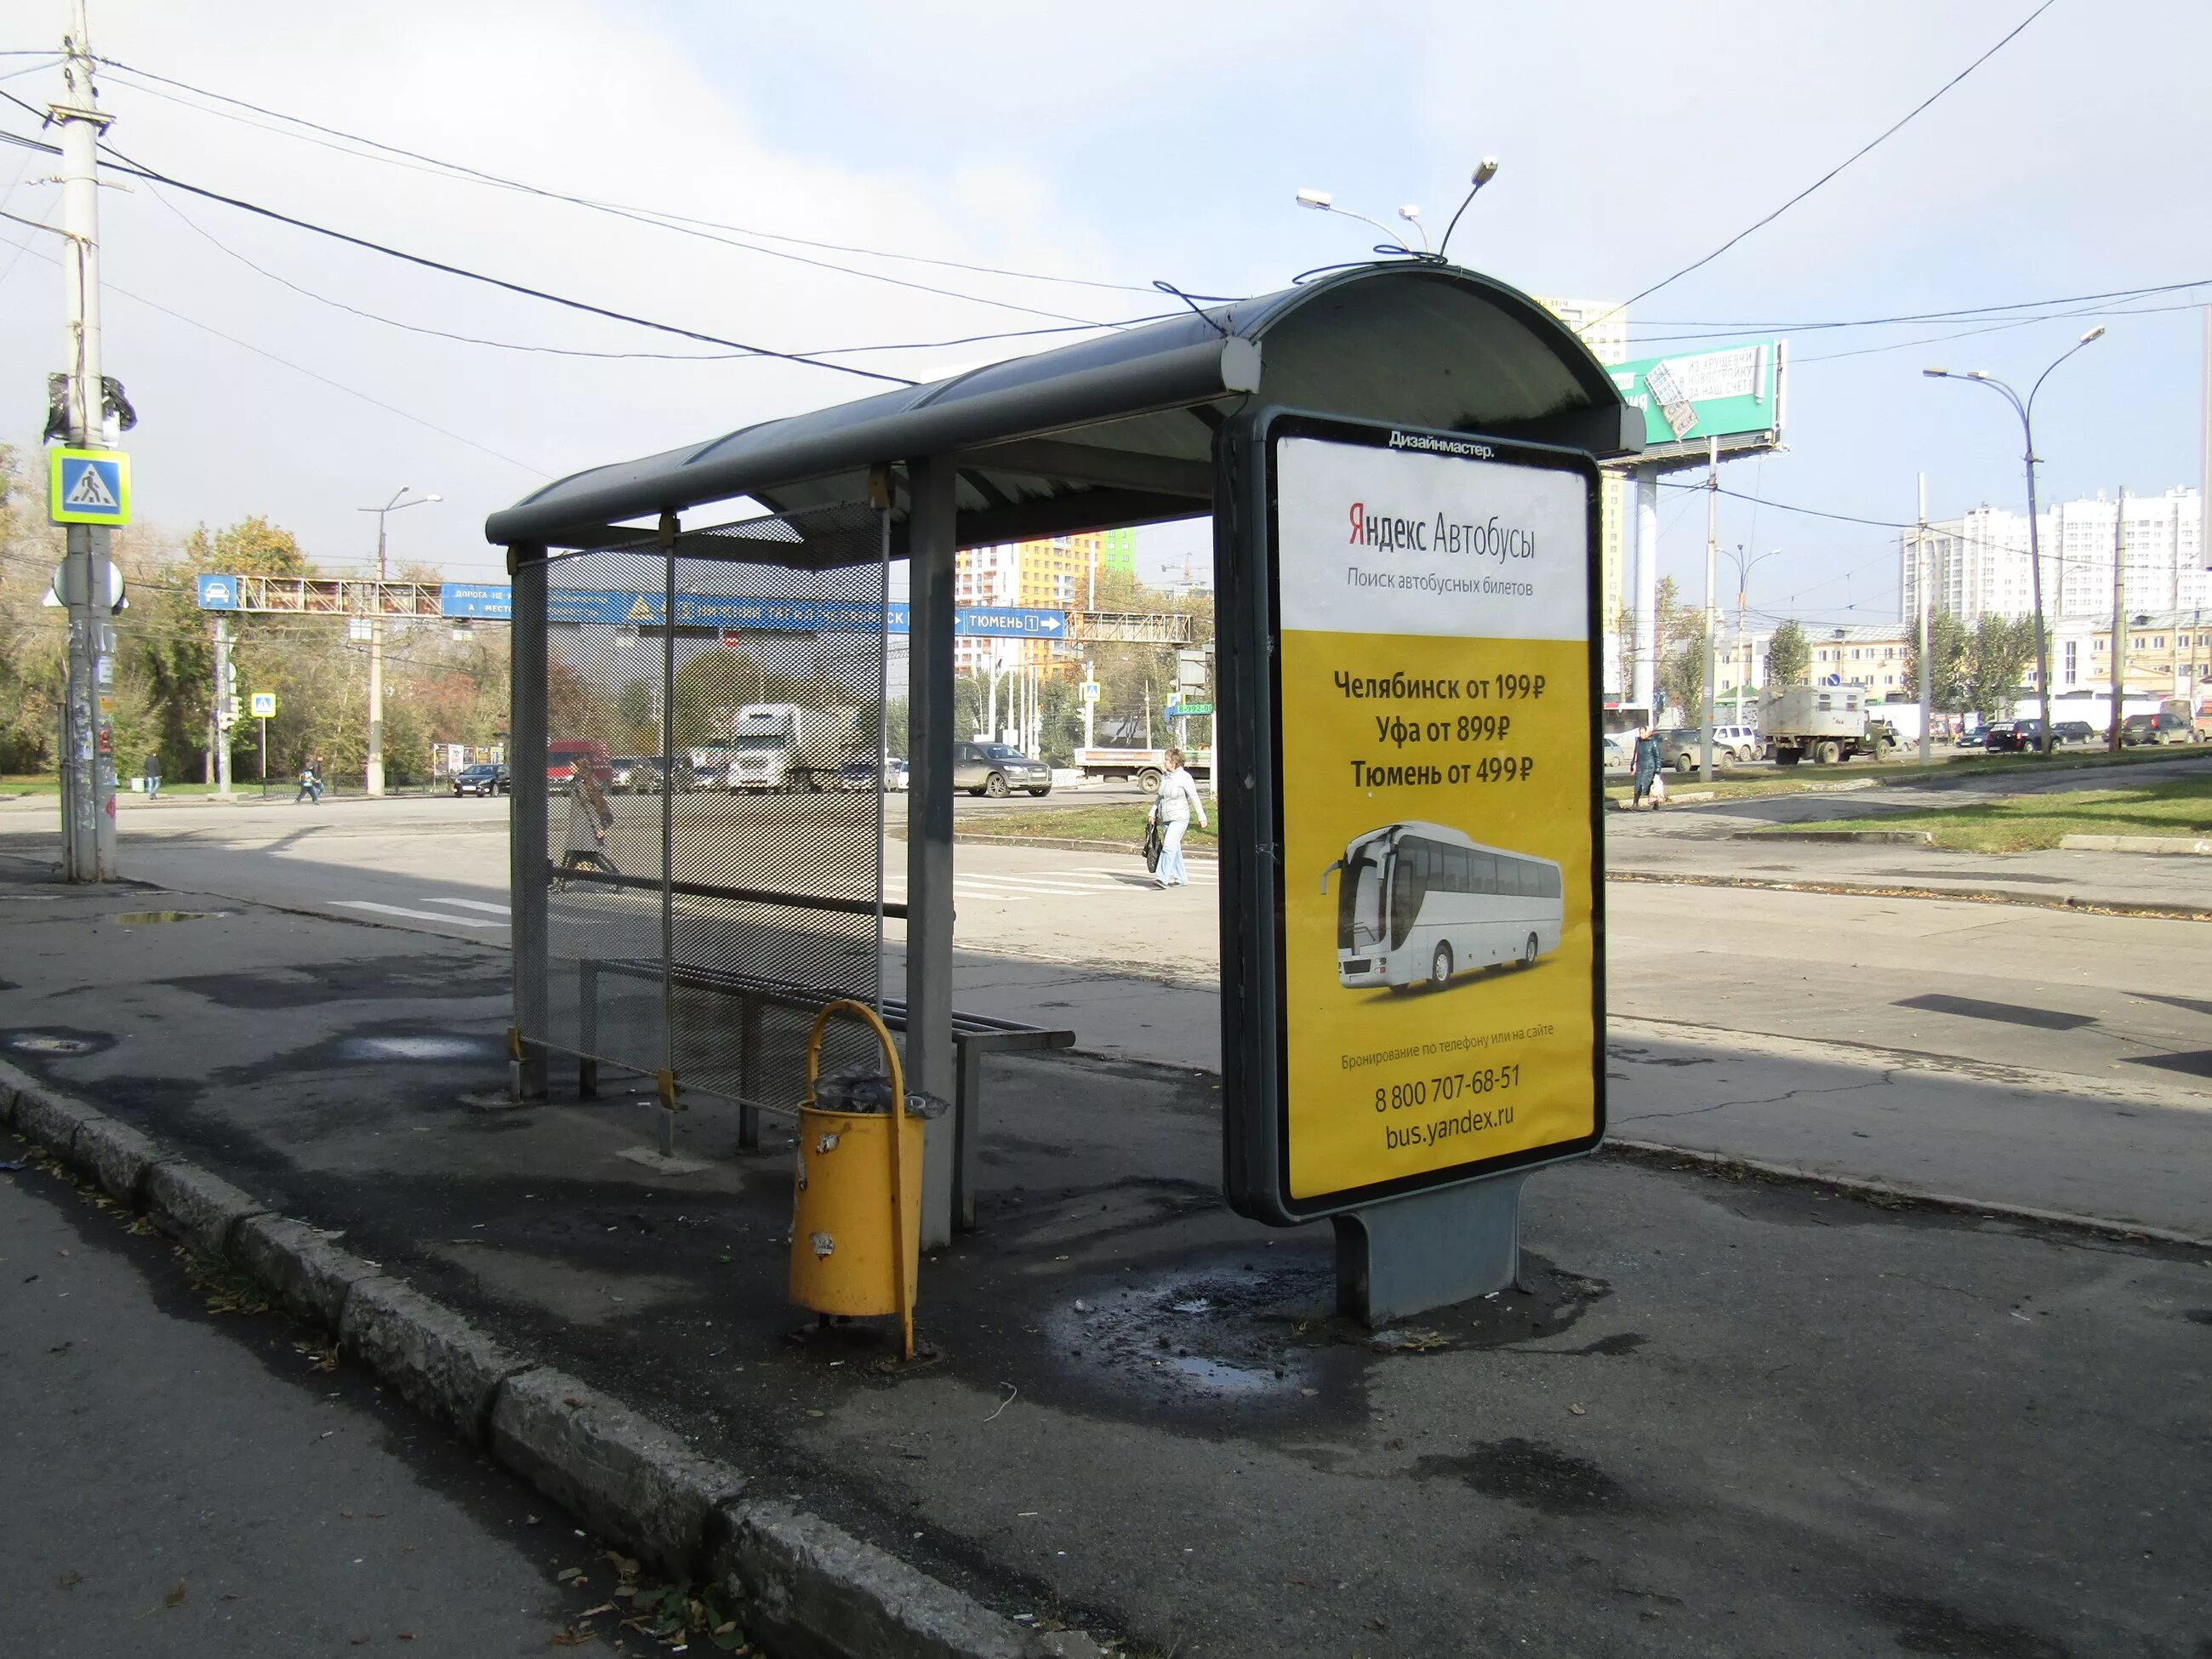 Далеко ост. Автобусная остановка. Название остановок общественного транспорта. Название автобусной остановки. Остановки общественного транспорта Екатеринбург.